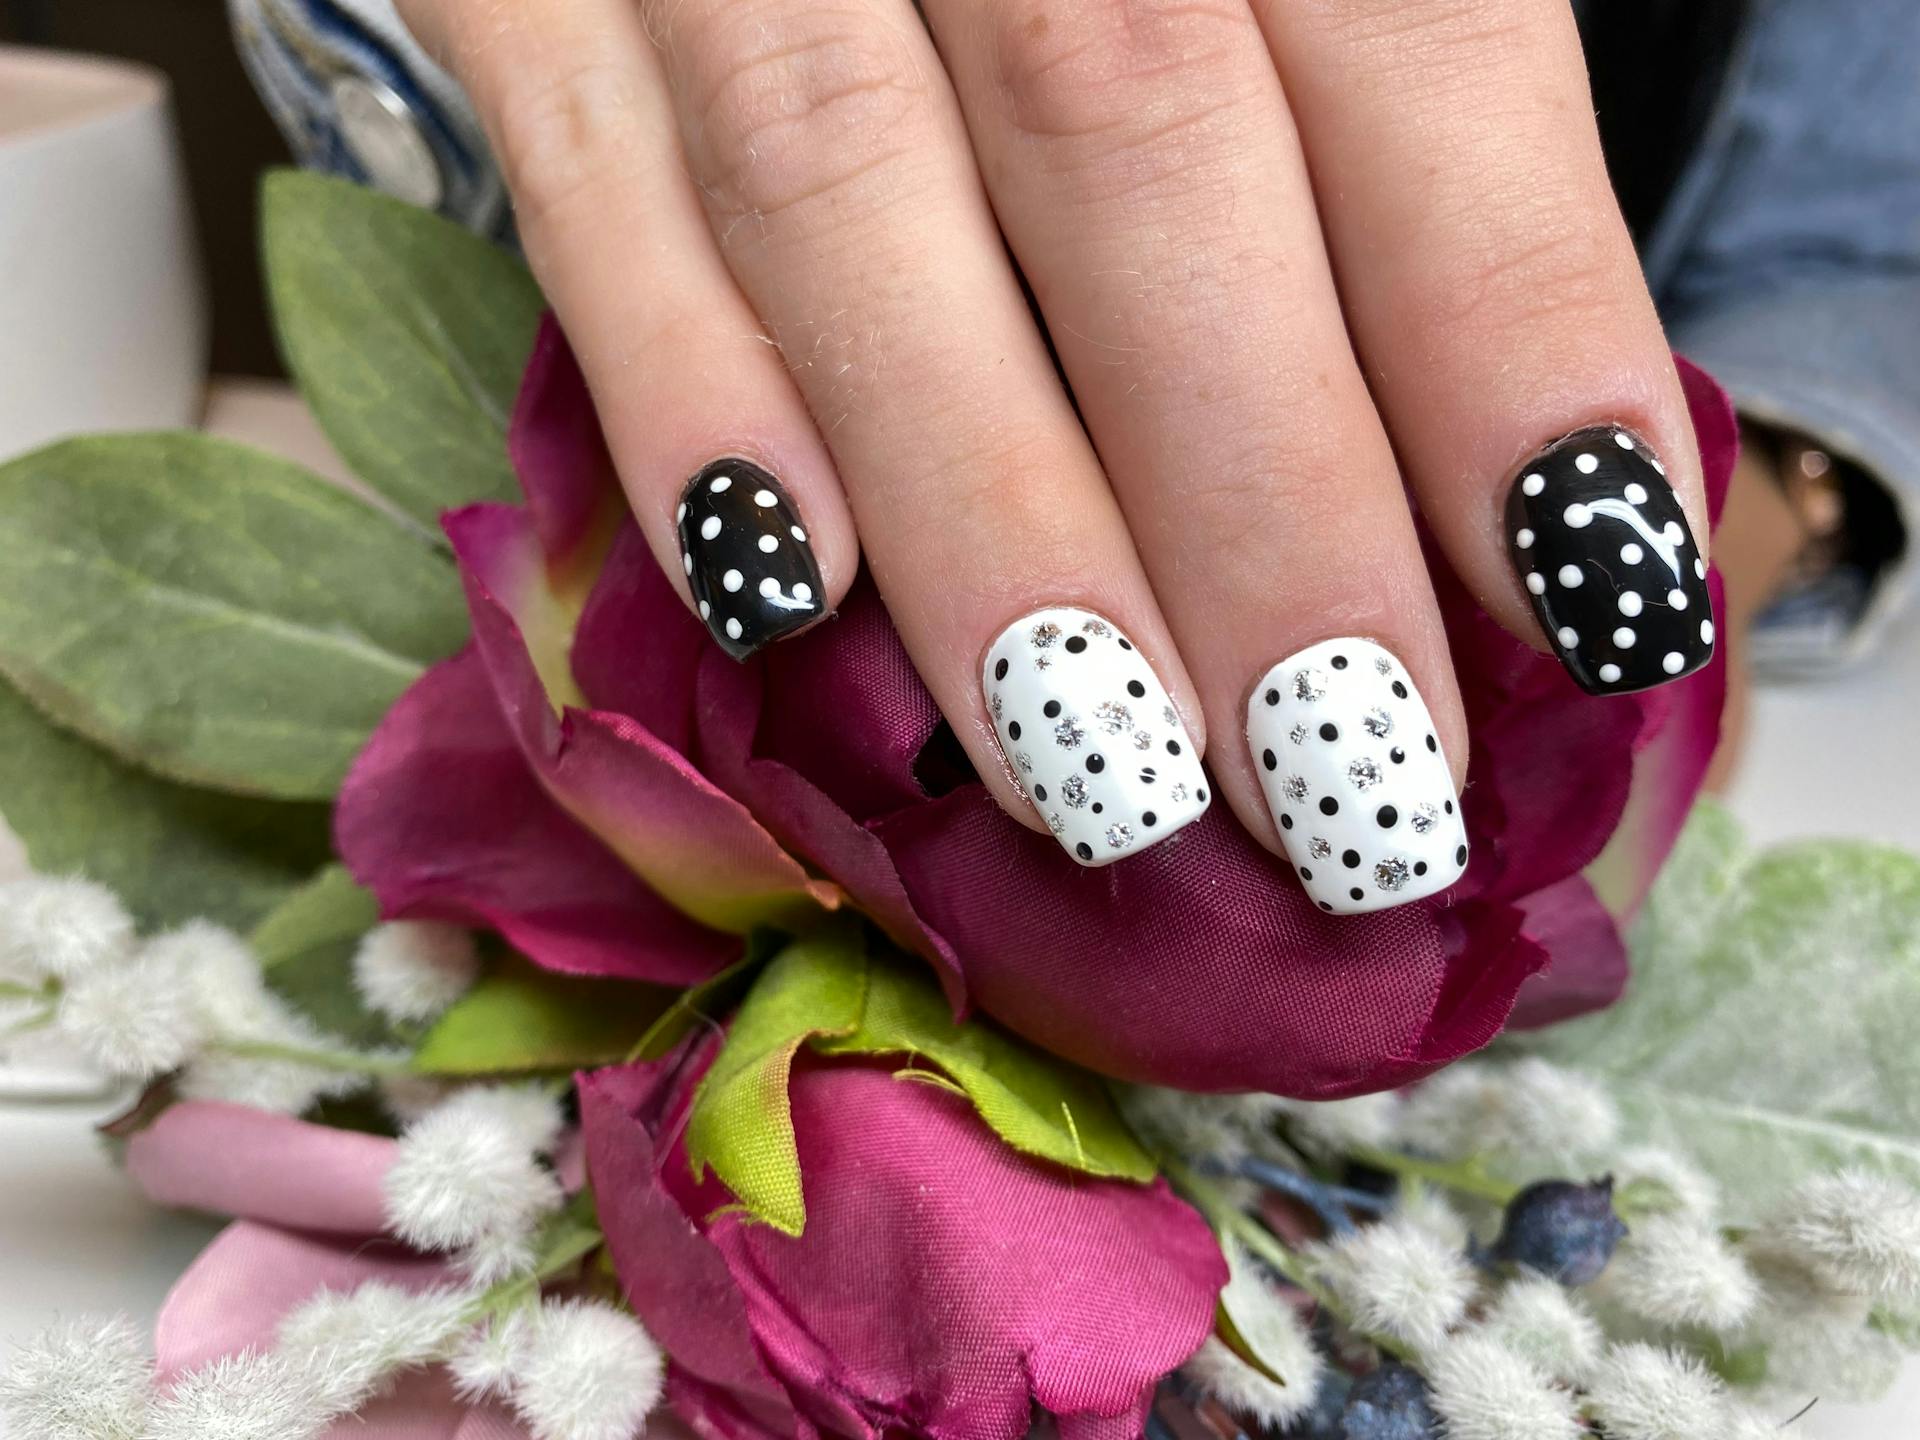 sqaure shape/ Polka Dots  on natural nails